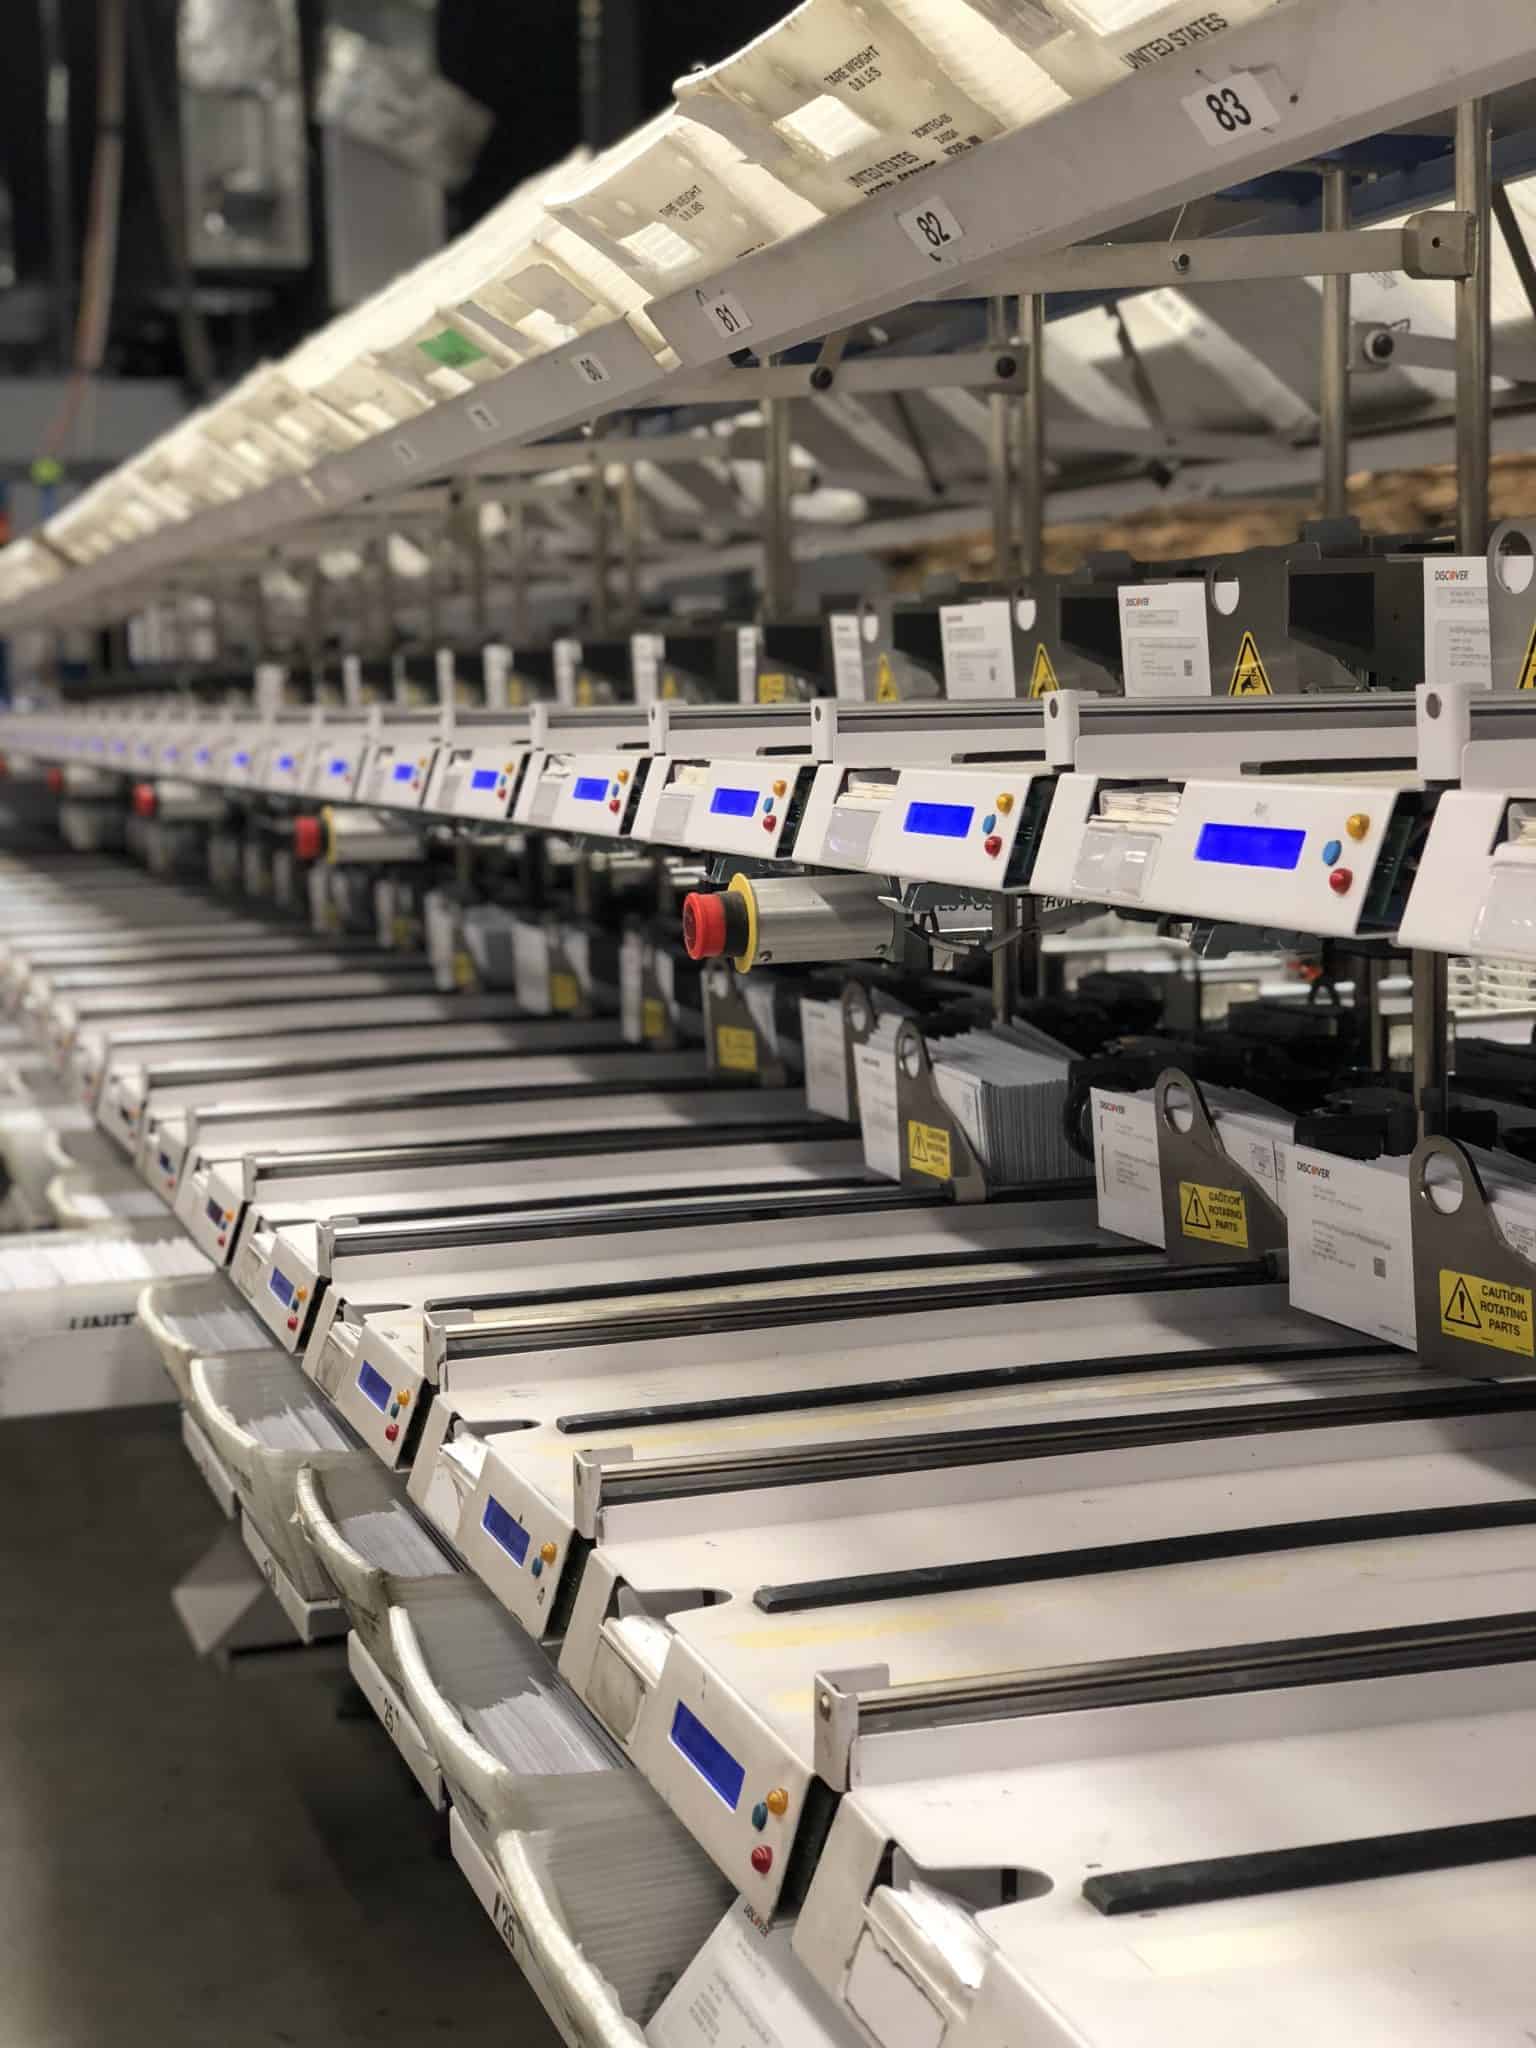 Image of Skymail's sorting machine